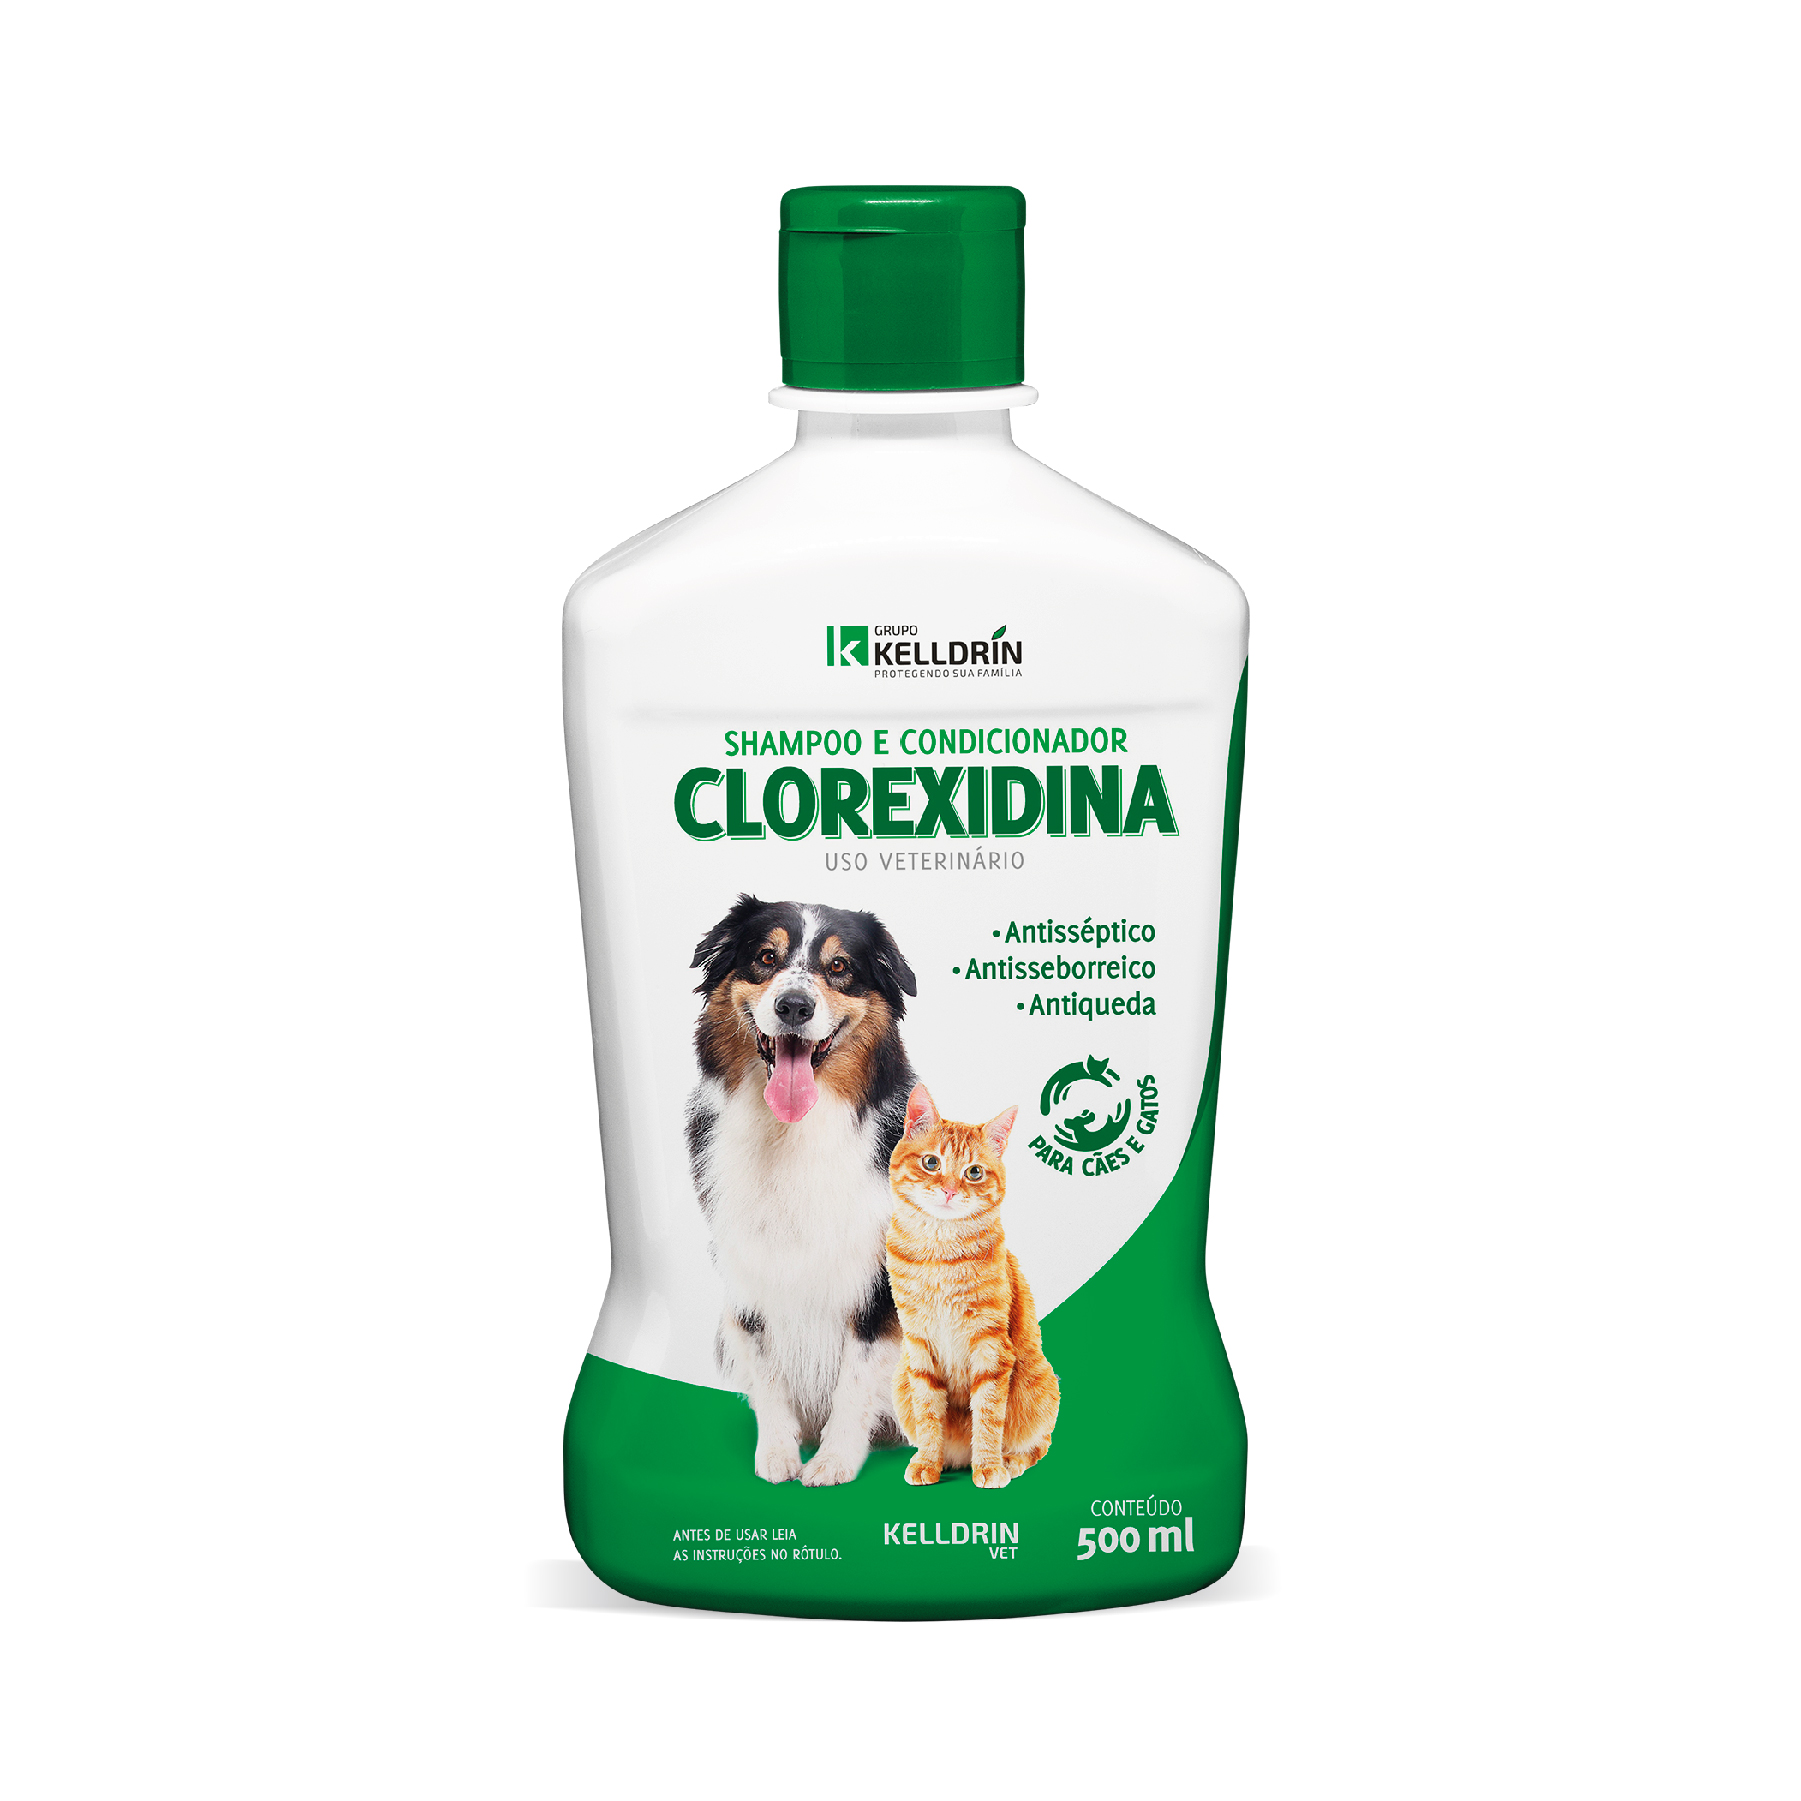 Shampoo & Condicionador Clorexidina 5 em 1